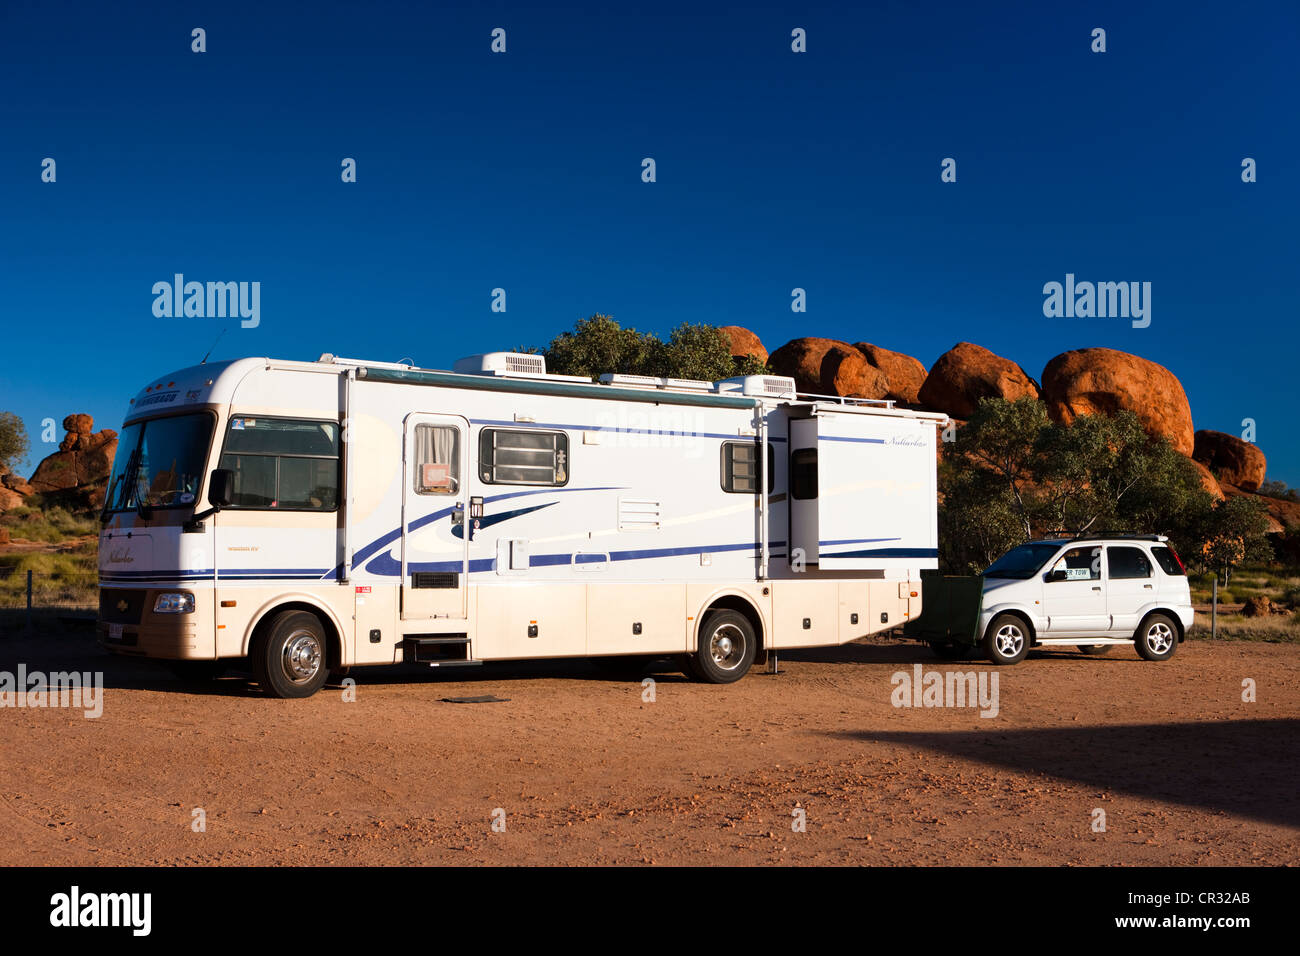 Caravana con un coche acoplado a la parte trasera, estacionada en un camping, diablos, canicas, Territorio del Norte, Australia Foto de stock